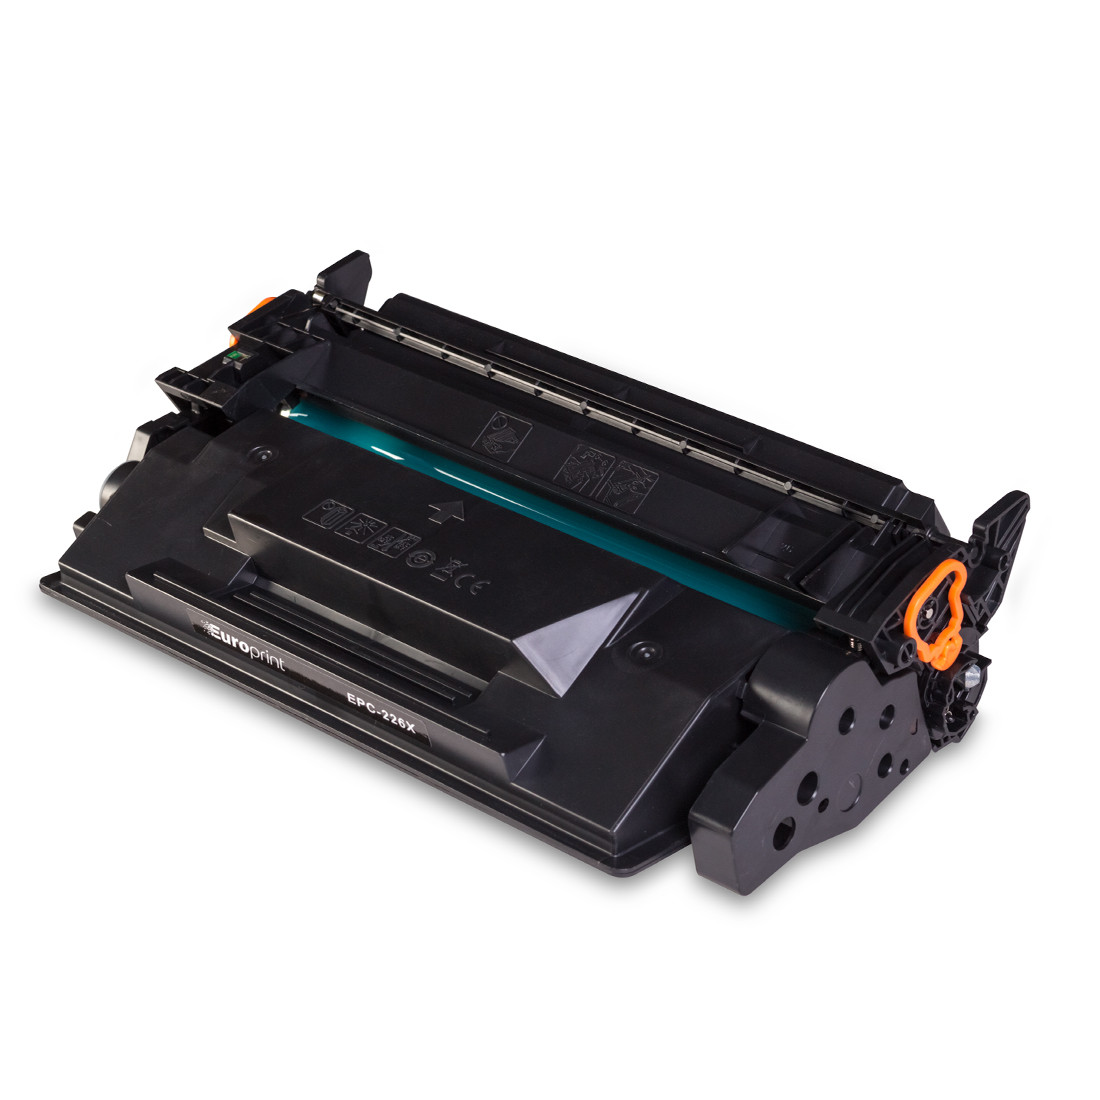 Картридж, Europrint, EPC-226X (CF226X), Для принтеров HP LaserJet Pro M402/MFP M426, 10500 страниц.